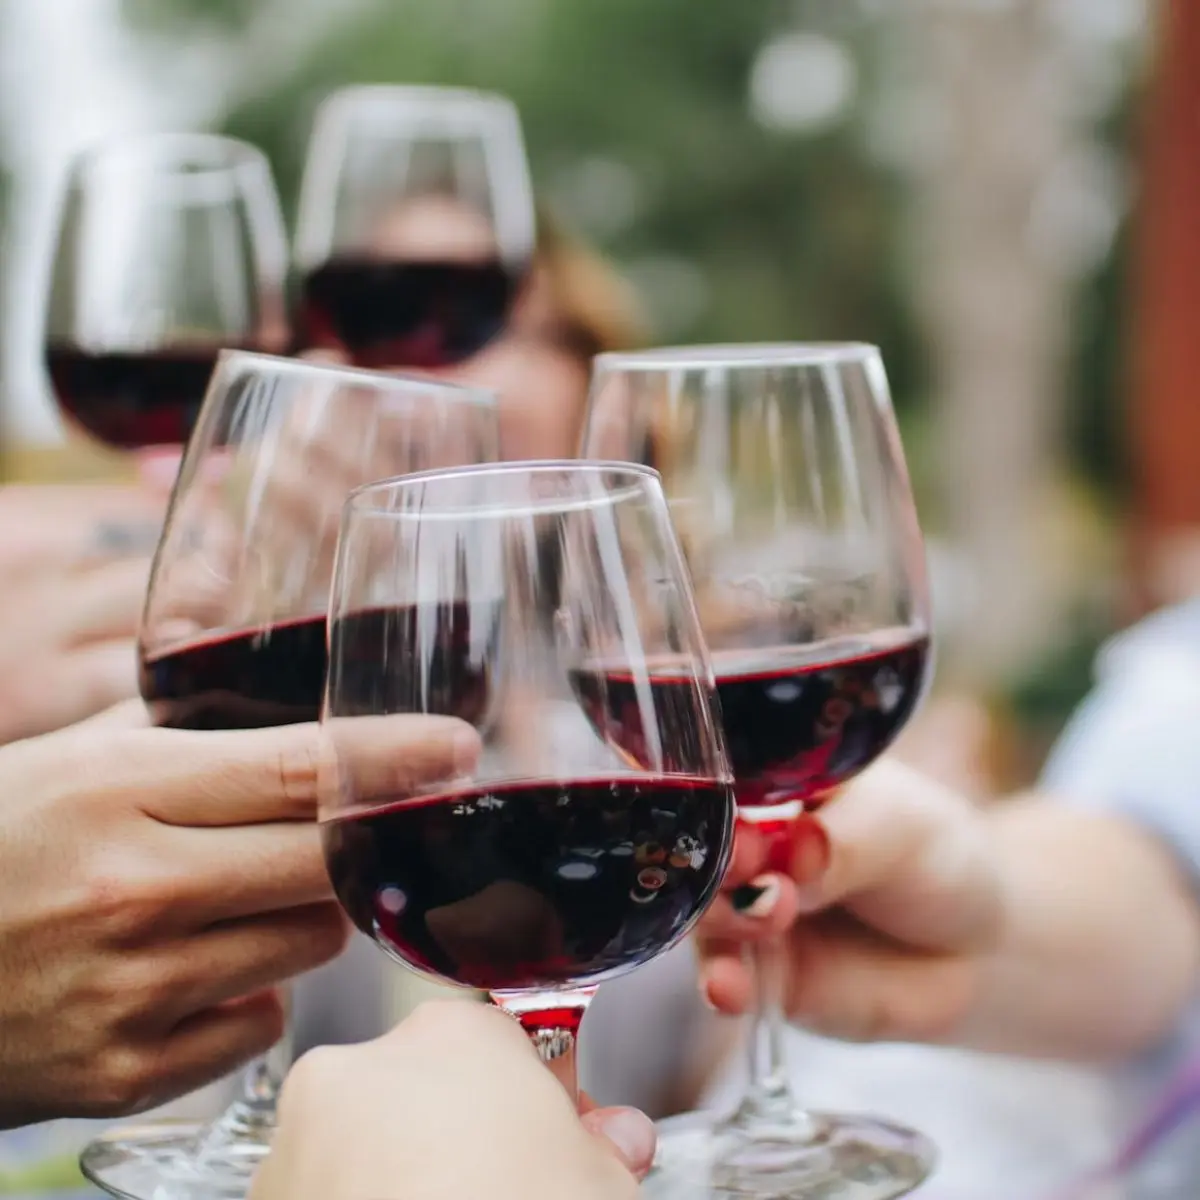 costo de fletes en parras coahuila para vino - Qué viñedos visitar en Parras de la Fuente